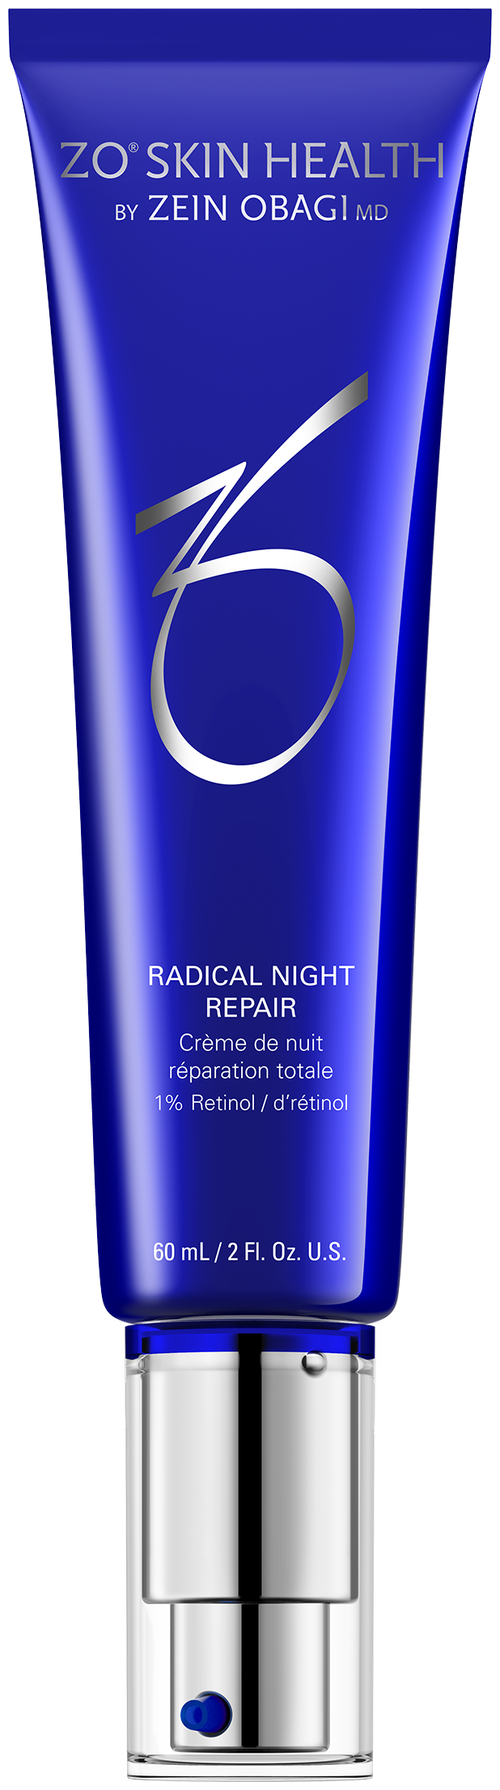 ZO Skin Health Radical Night Repair 1% Retinol Интенсивный обновляющий ночной крем для лица с ретинолом, 60 мл